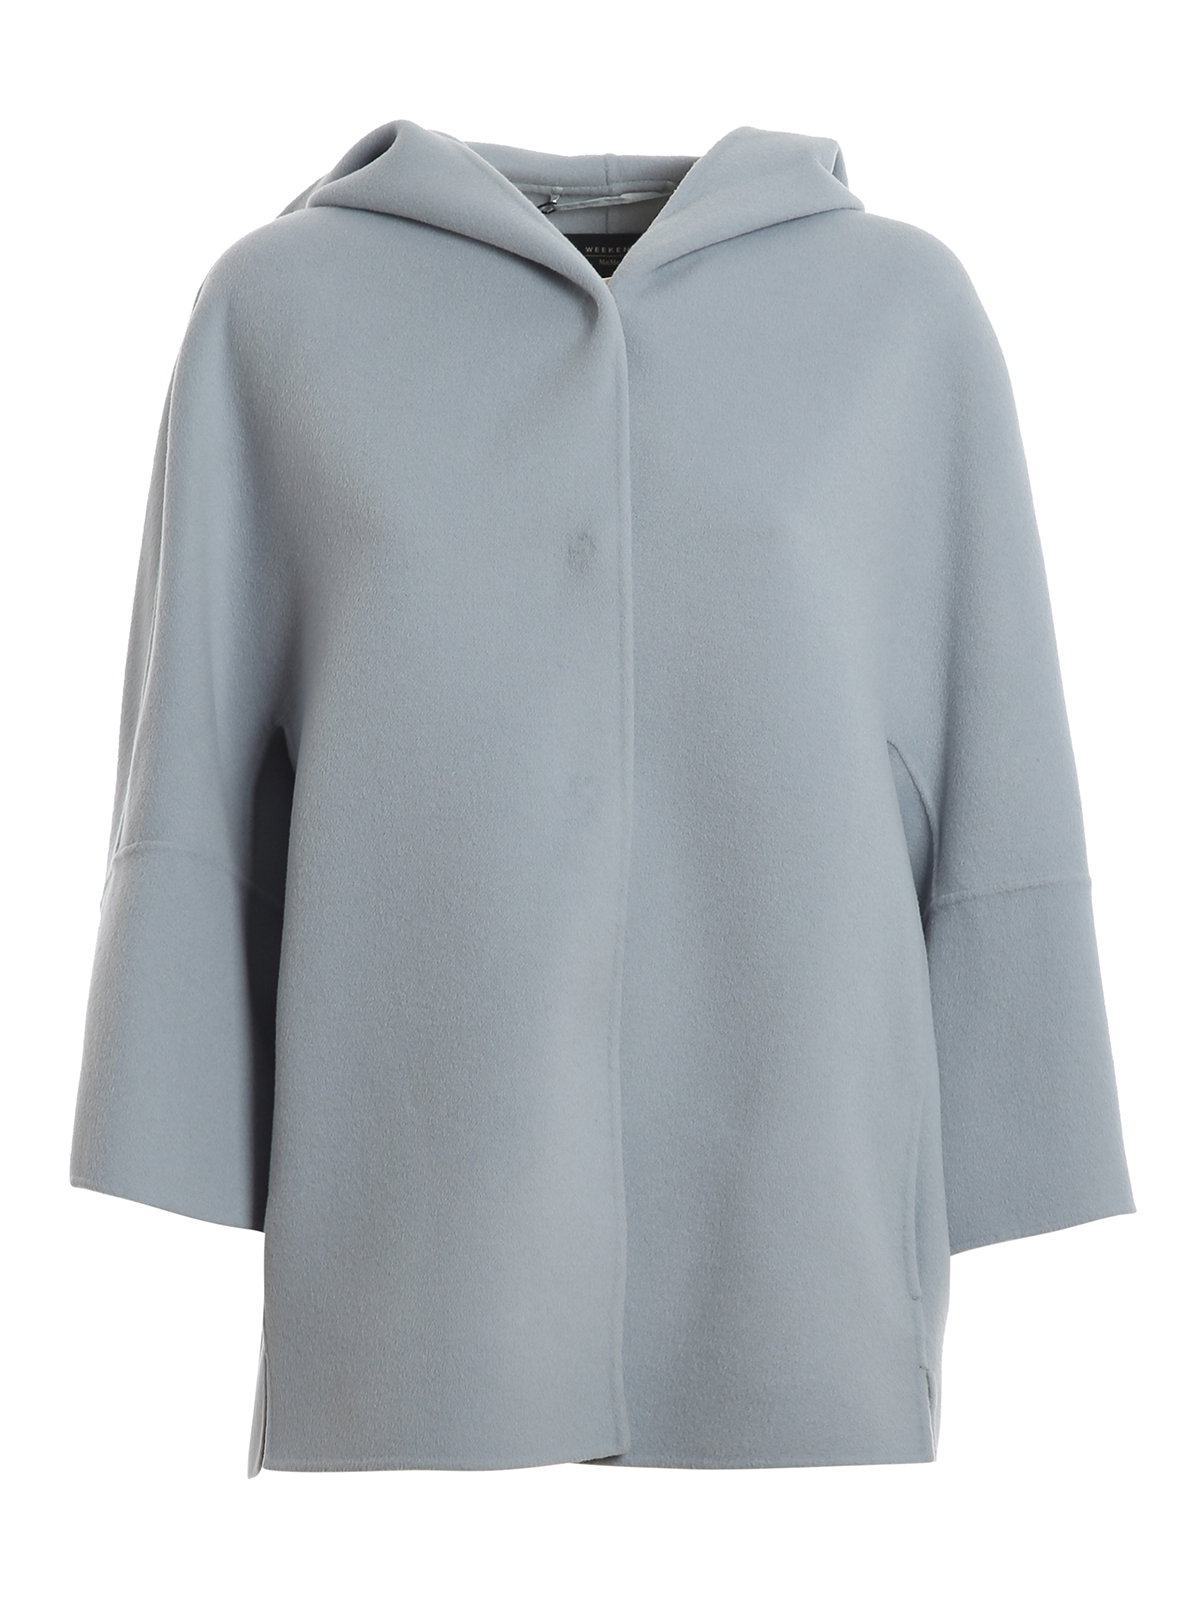 Weekend Max Mara - Rapace wool jacket - casual jackets - 50860209650066